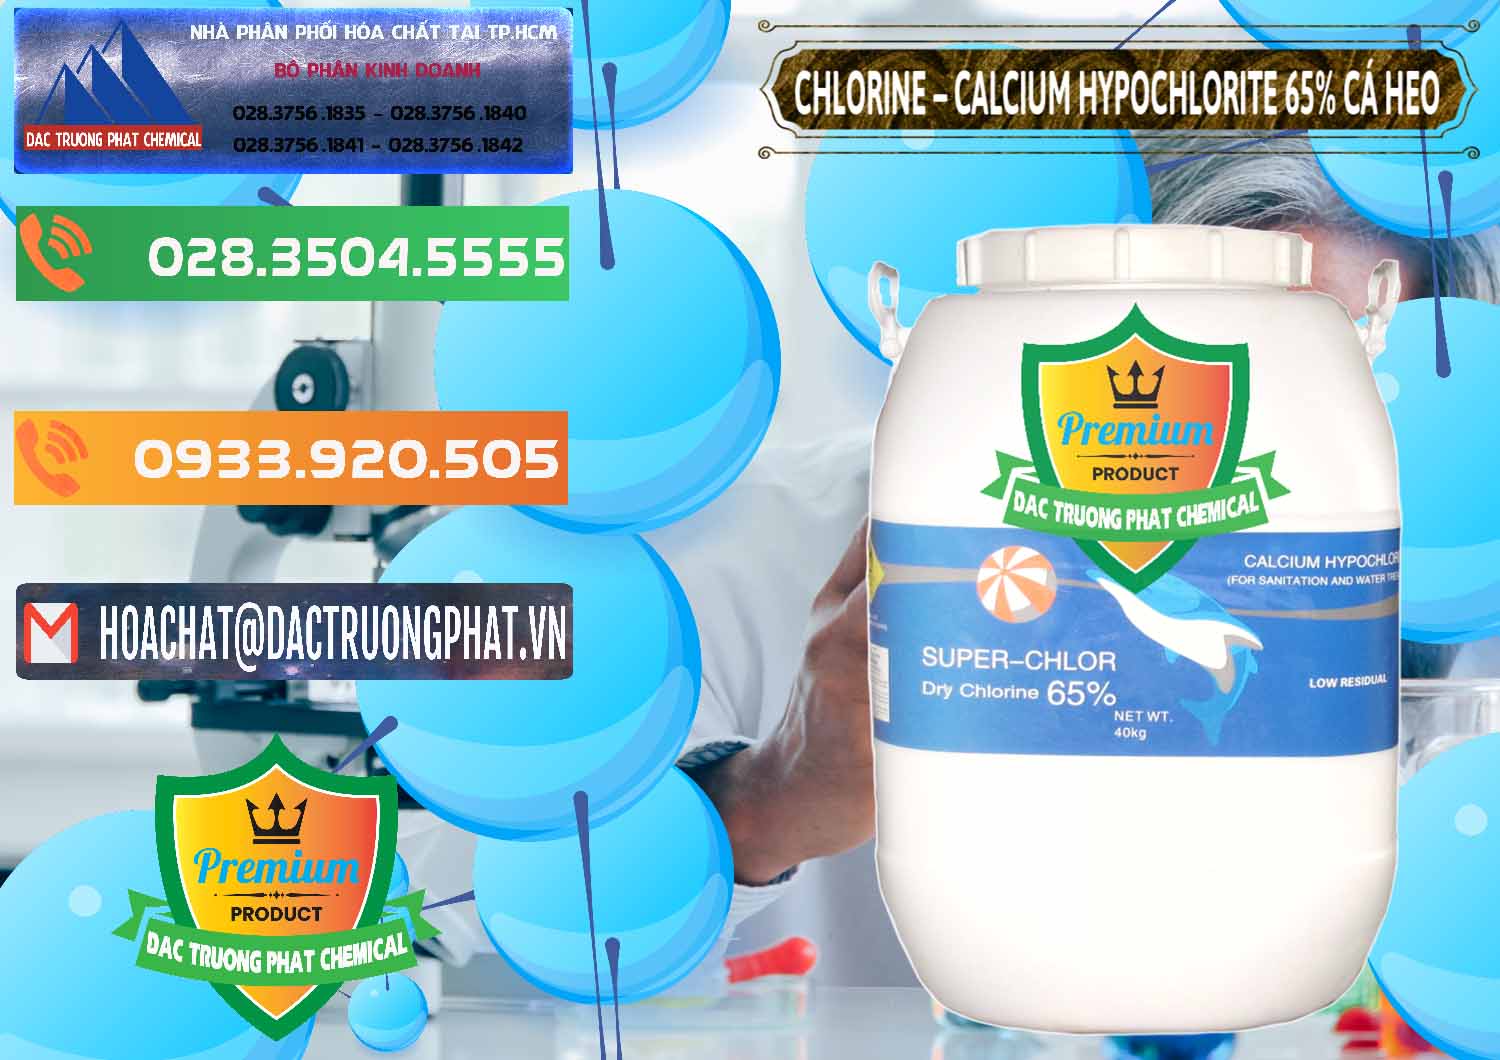 Đơn vị cung cấp - bán Clorin - Chlorine Cá Heo 65% Trung Quốc China - 0053 - Công ty kinh doanh _ cung cấp hóa chất tại TP.HCM - hoachatxulynuoc.com.vn